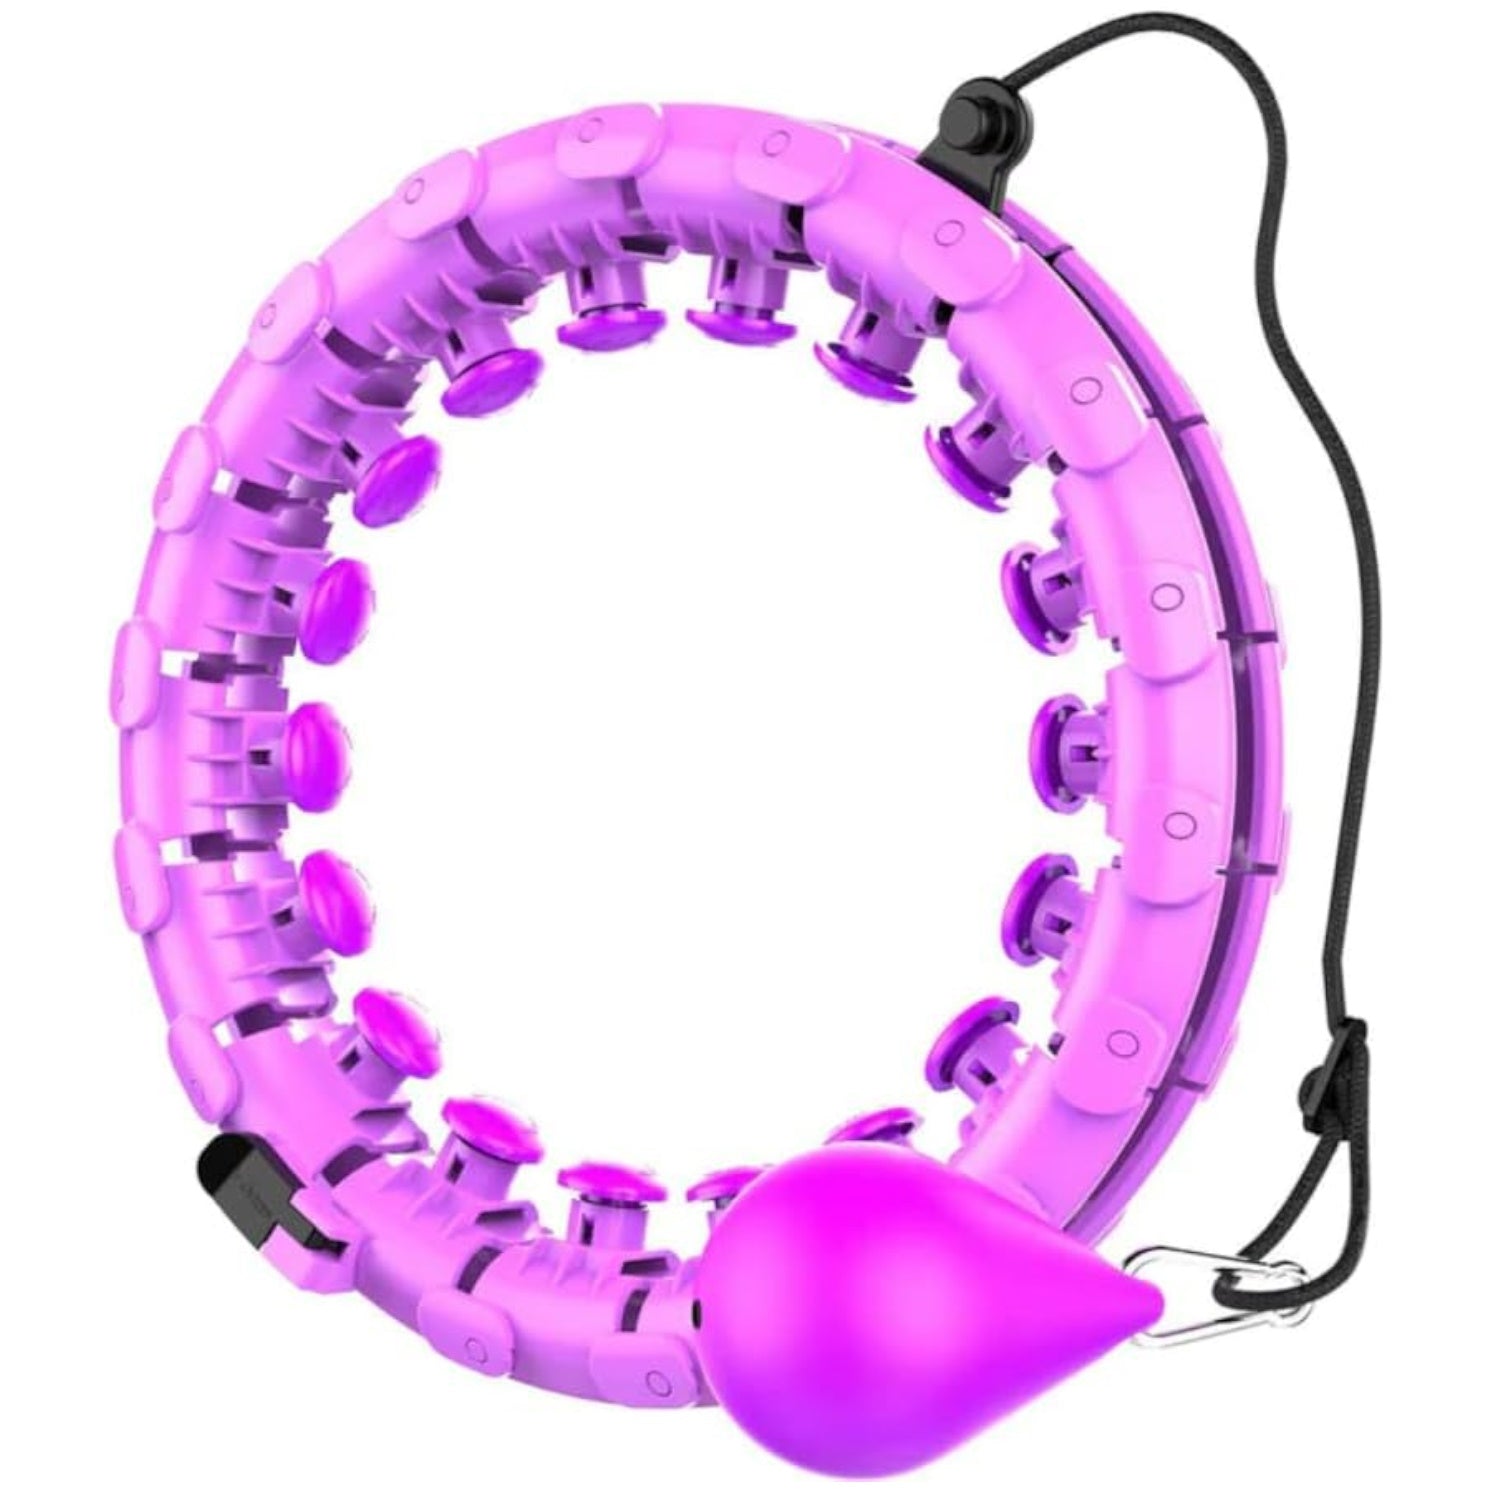 Verpeak Weighted Hula Hoop with 26 Detachable Knots (Purple)